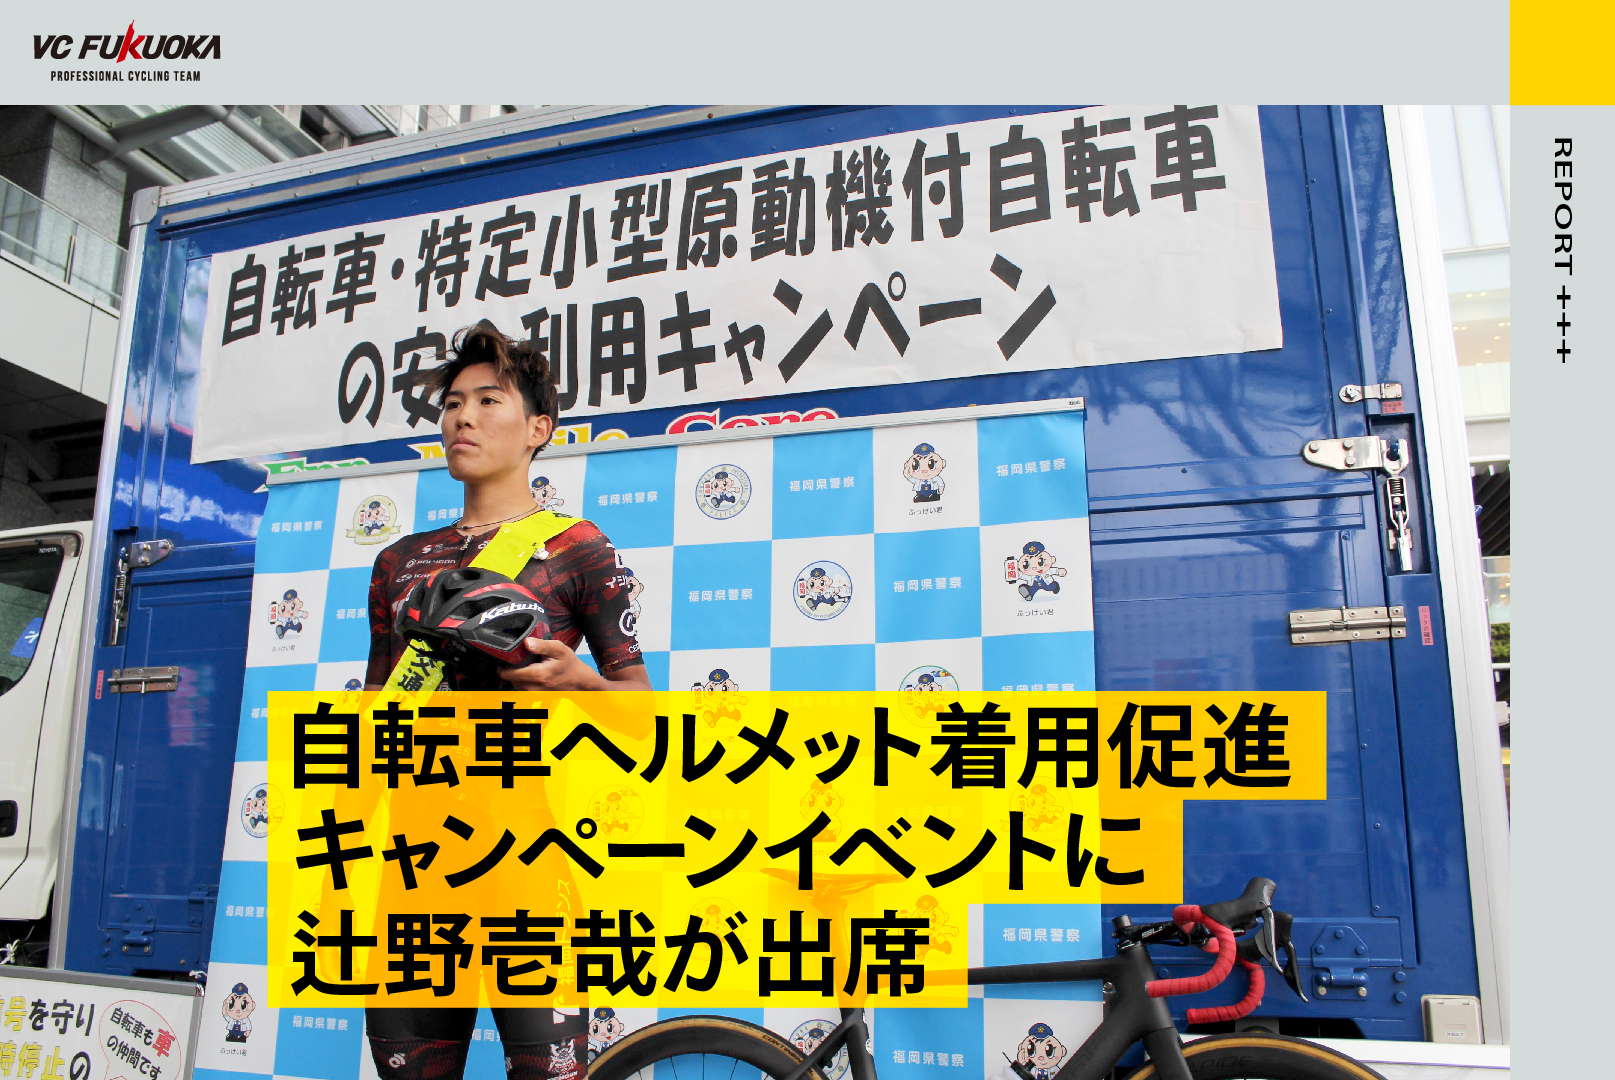 5/28 自転車ヘルメット着用促進キャンペーンイベント レポート